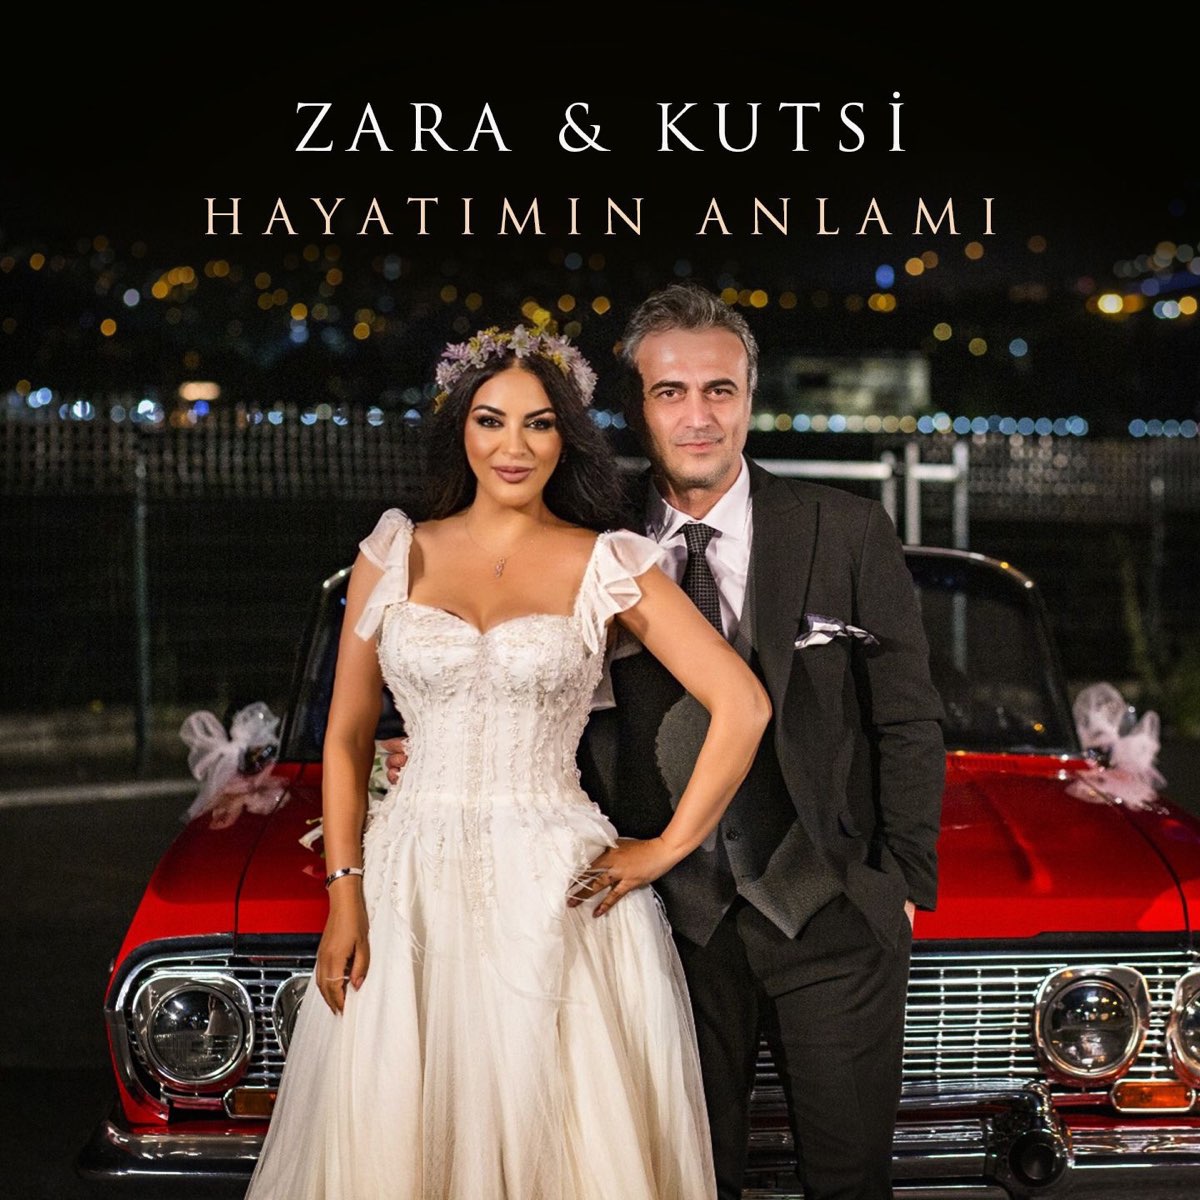 ‎Hayatımın Anlamı - Single by Zara & Kutsi on Apple Music